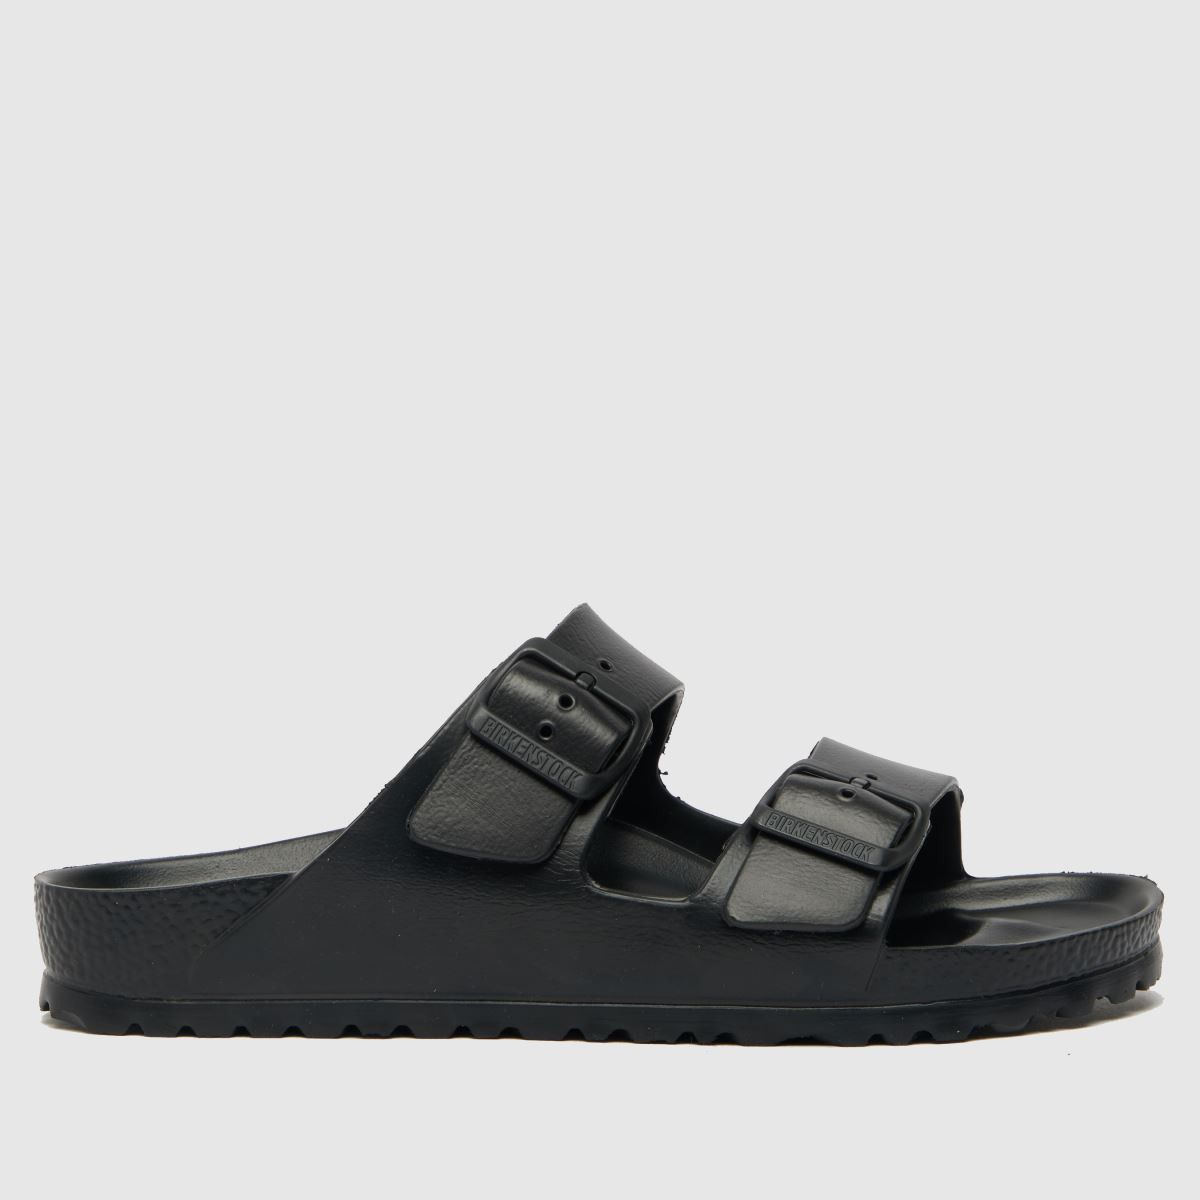 BIRKENSTOCK arizona eva sandals in black | Schuh